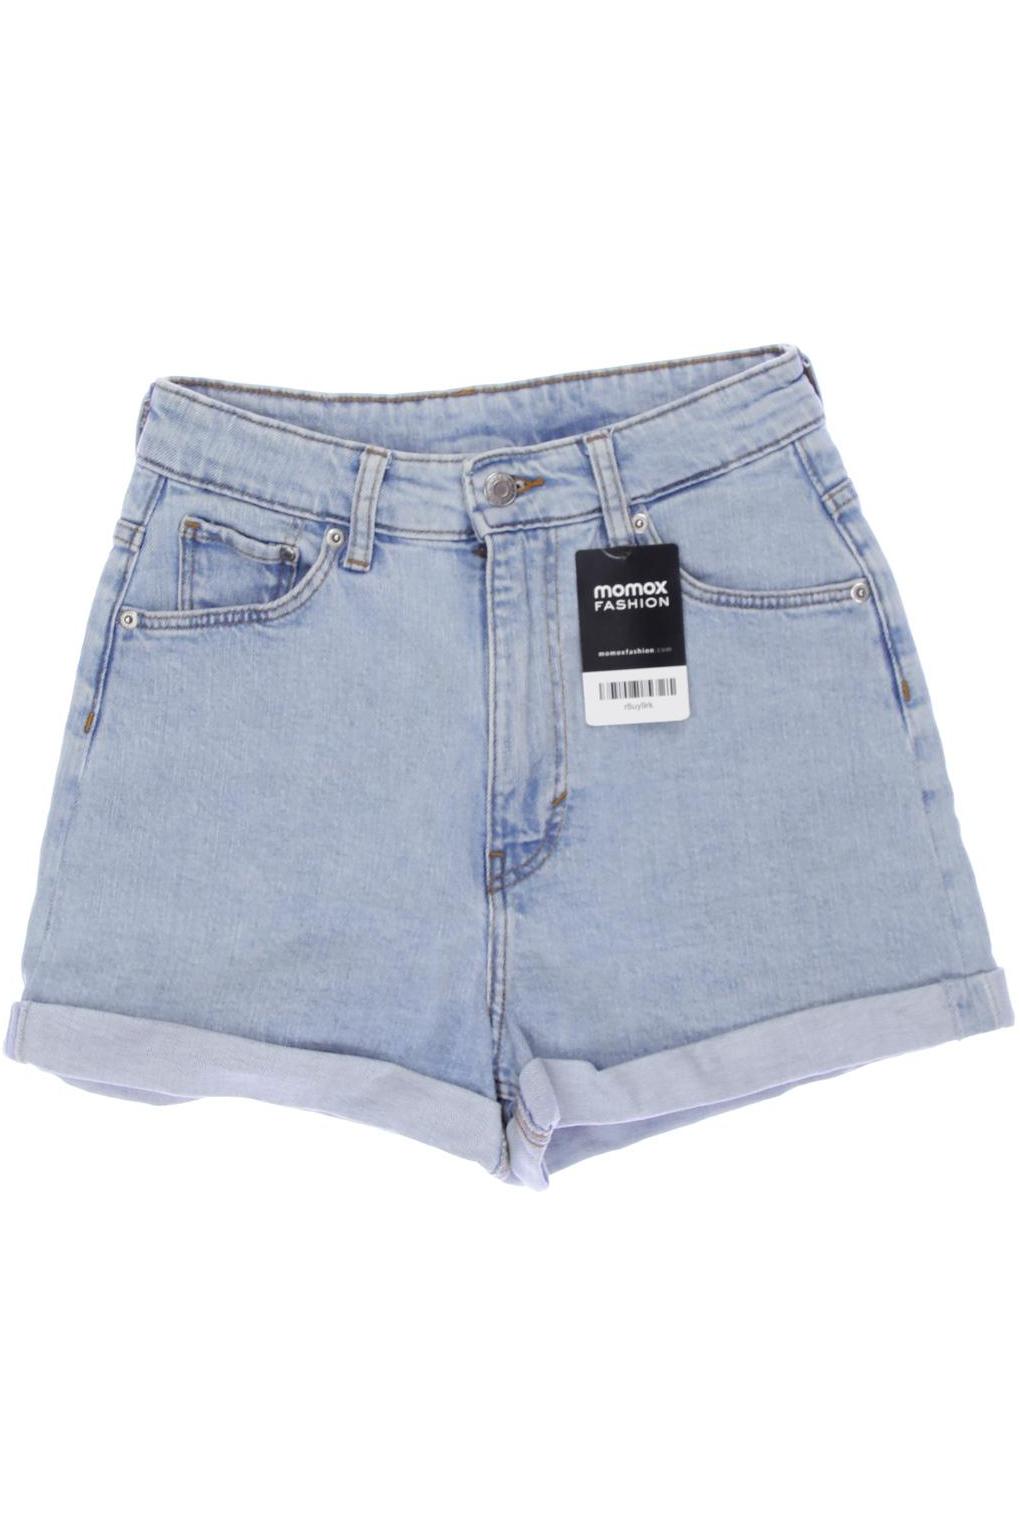 H&M Damen Shorts, hellblau, Gr. 34 von H&M